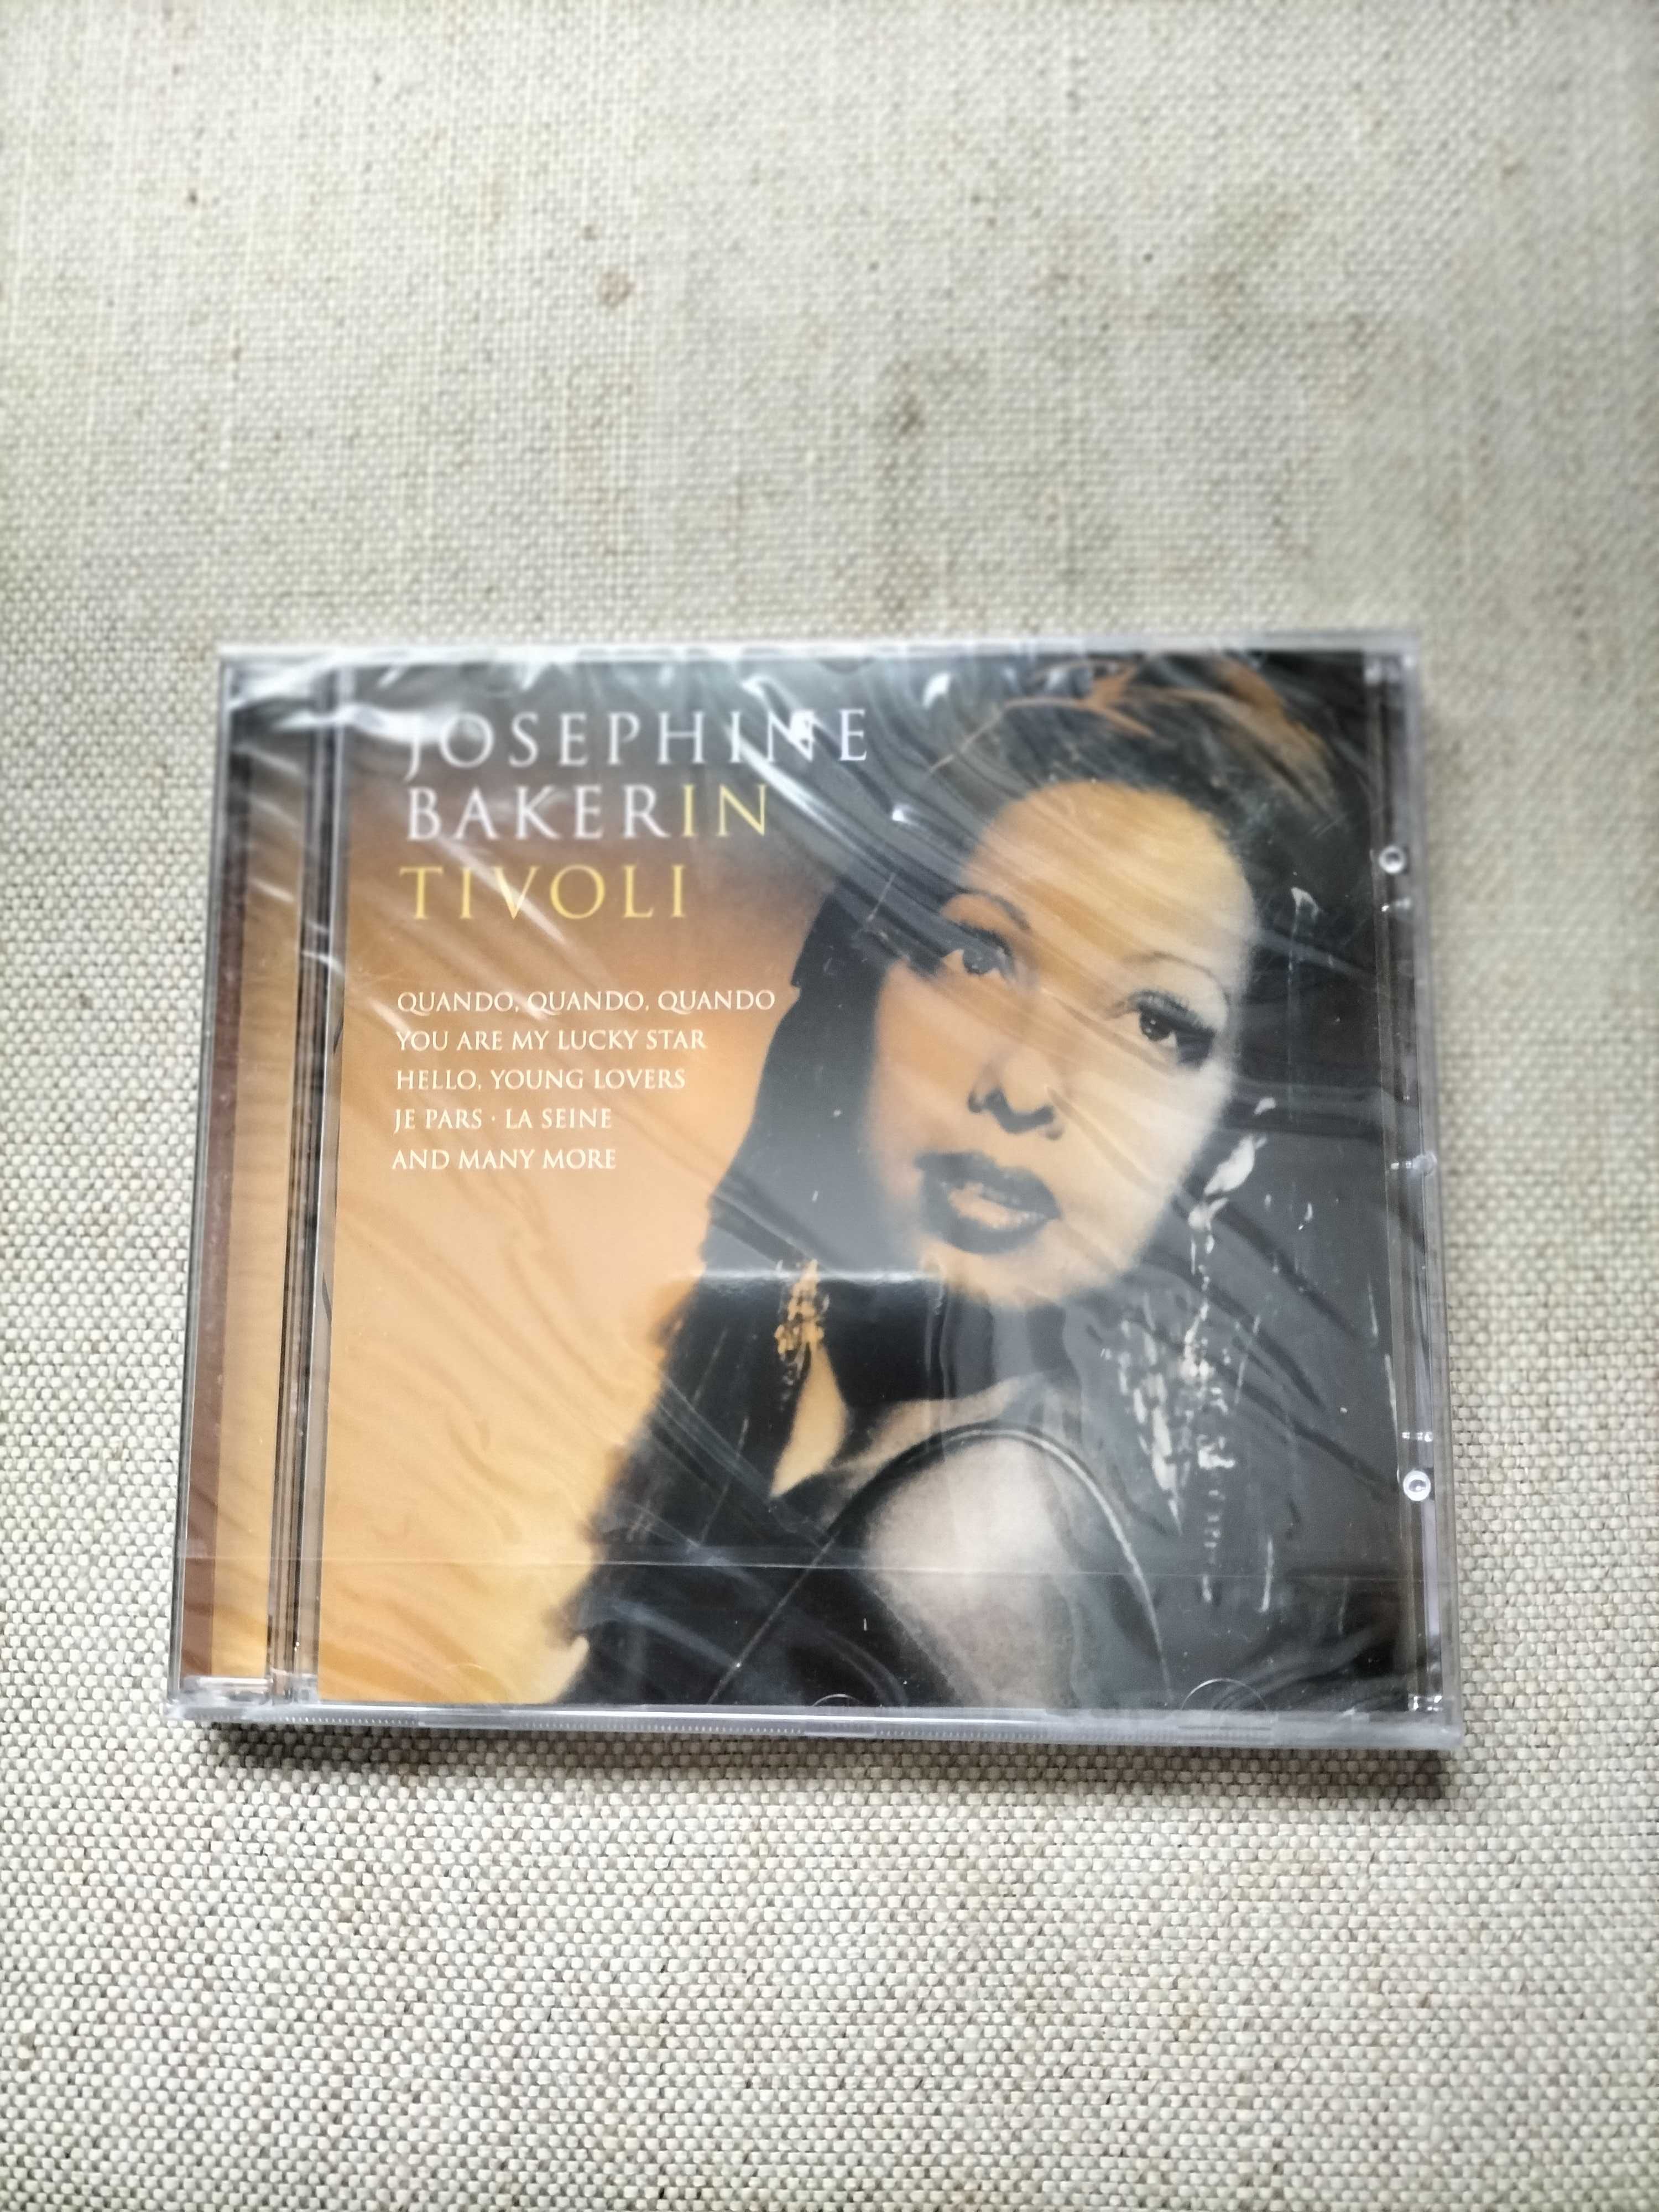 nowe CD Josephine Bakerin  " Tivoli " mint